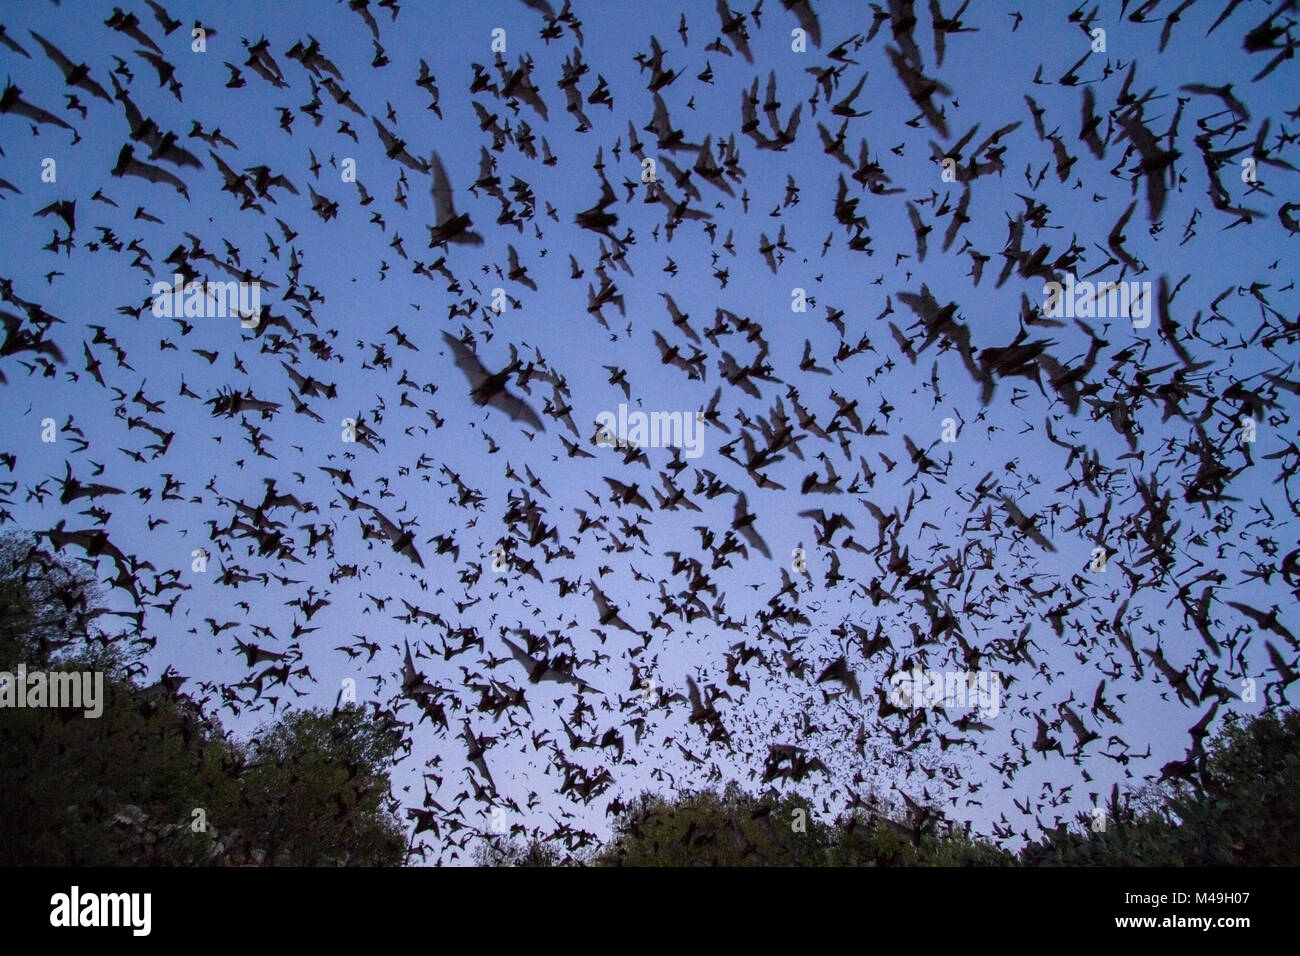 Libera messicano-tailed pipistrelli, (Tadarida brasiliensis), lasciando Bracken Grotta, Texas. Bracken grotta è la casa estiva di oltre 15 milioni di pipistrelli, il che la rende la più grande colonia di pipistrelli nel mondo e una delle maggiori concentrazioni di mammiferi del pianeta. Agosto 2011 Foto Stock